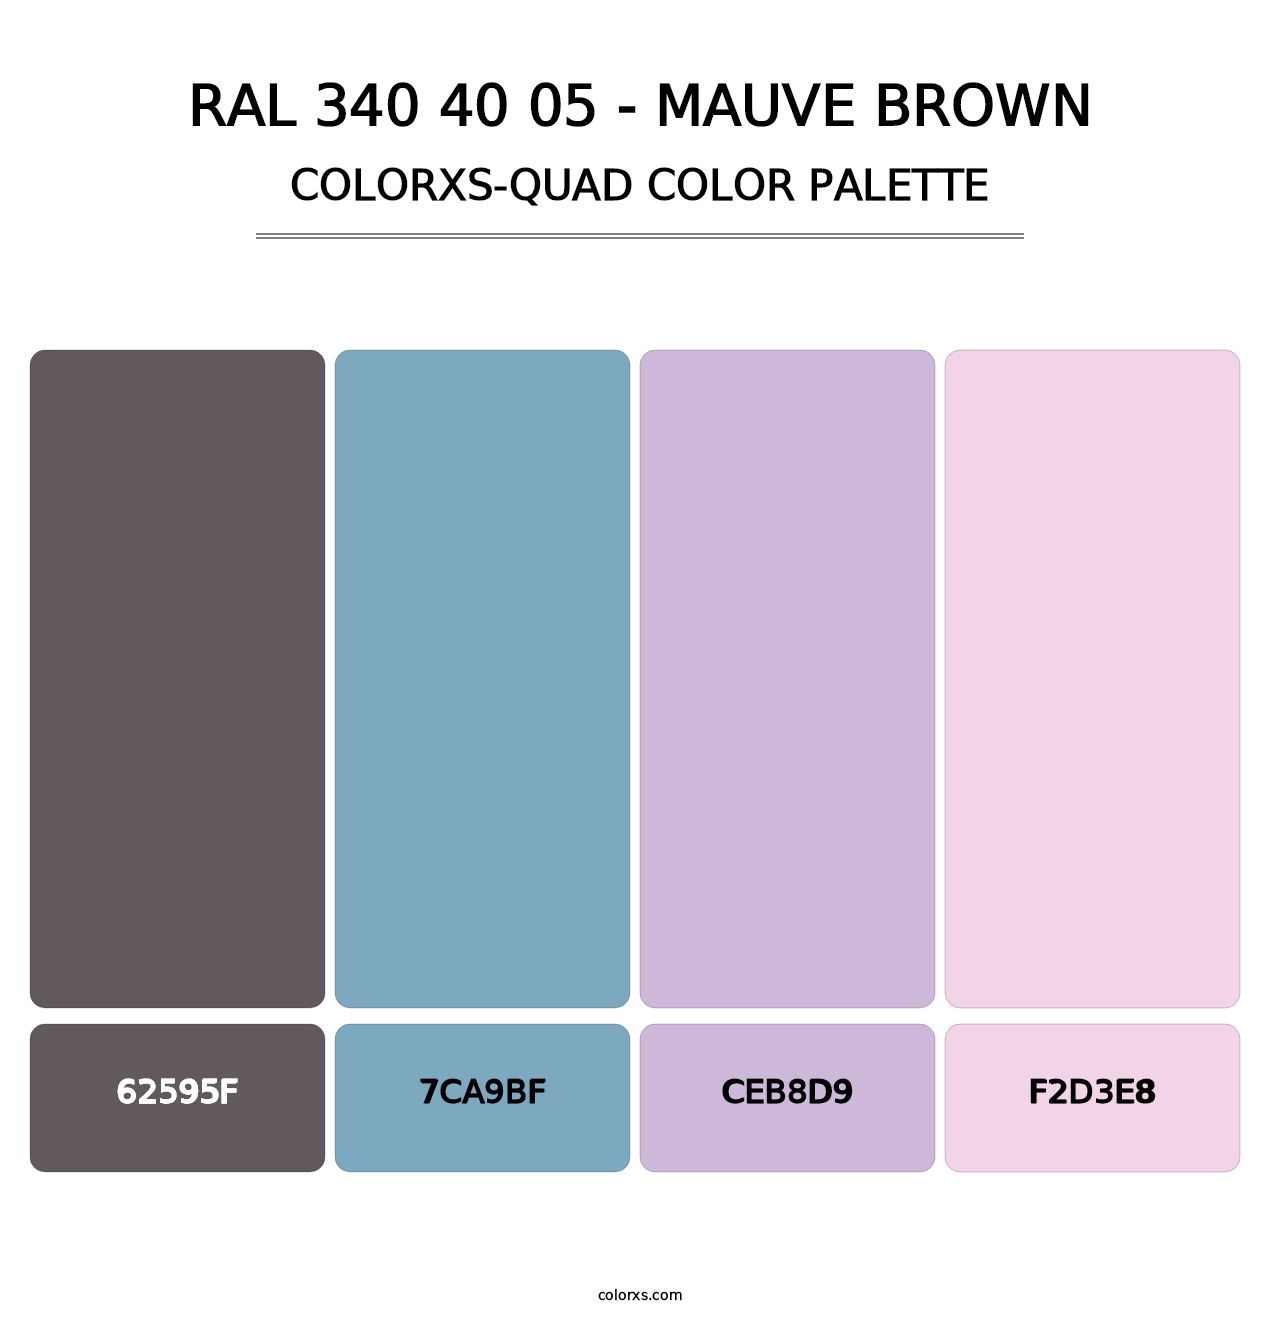 RAL 340 40 05 - Mauve Brown - Colorxs Quad Palette